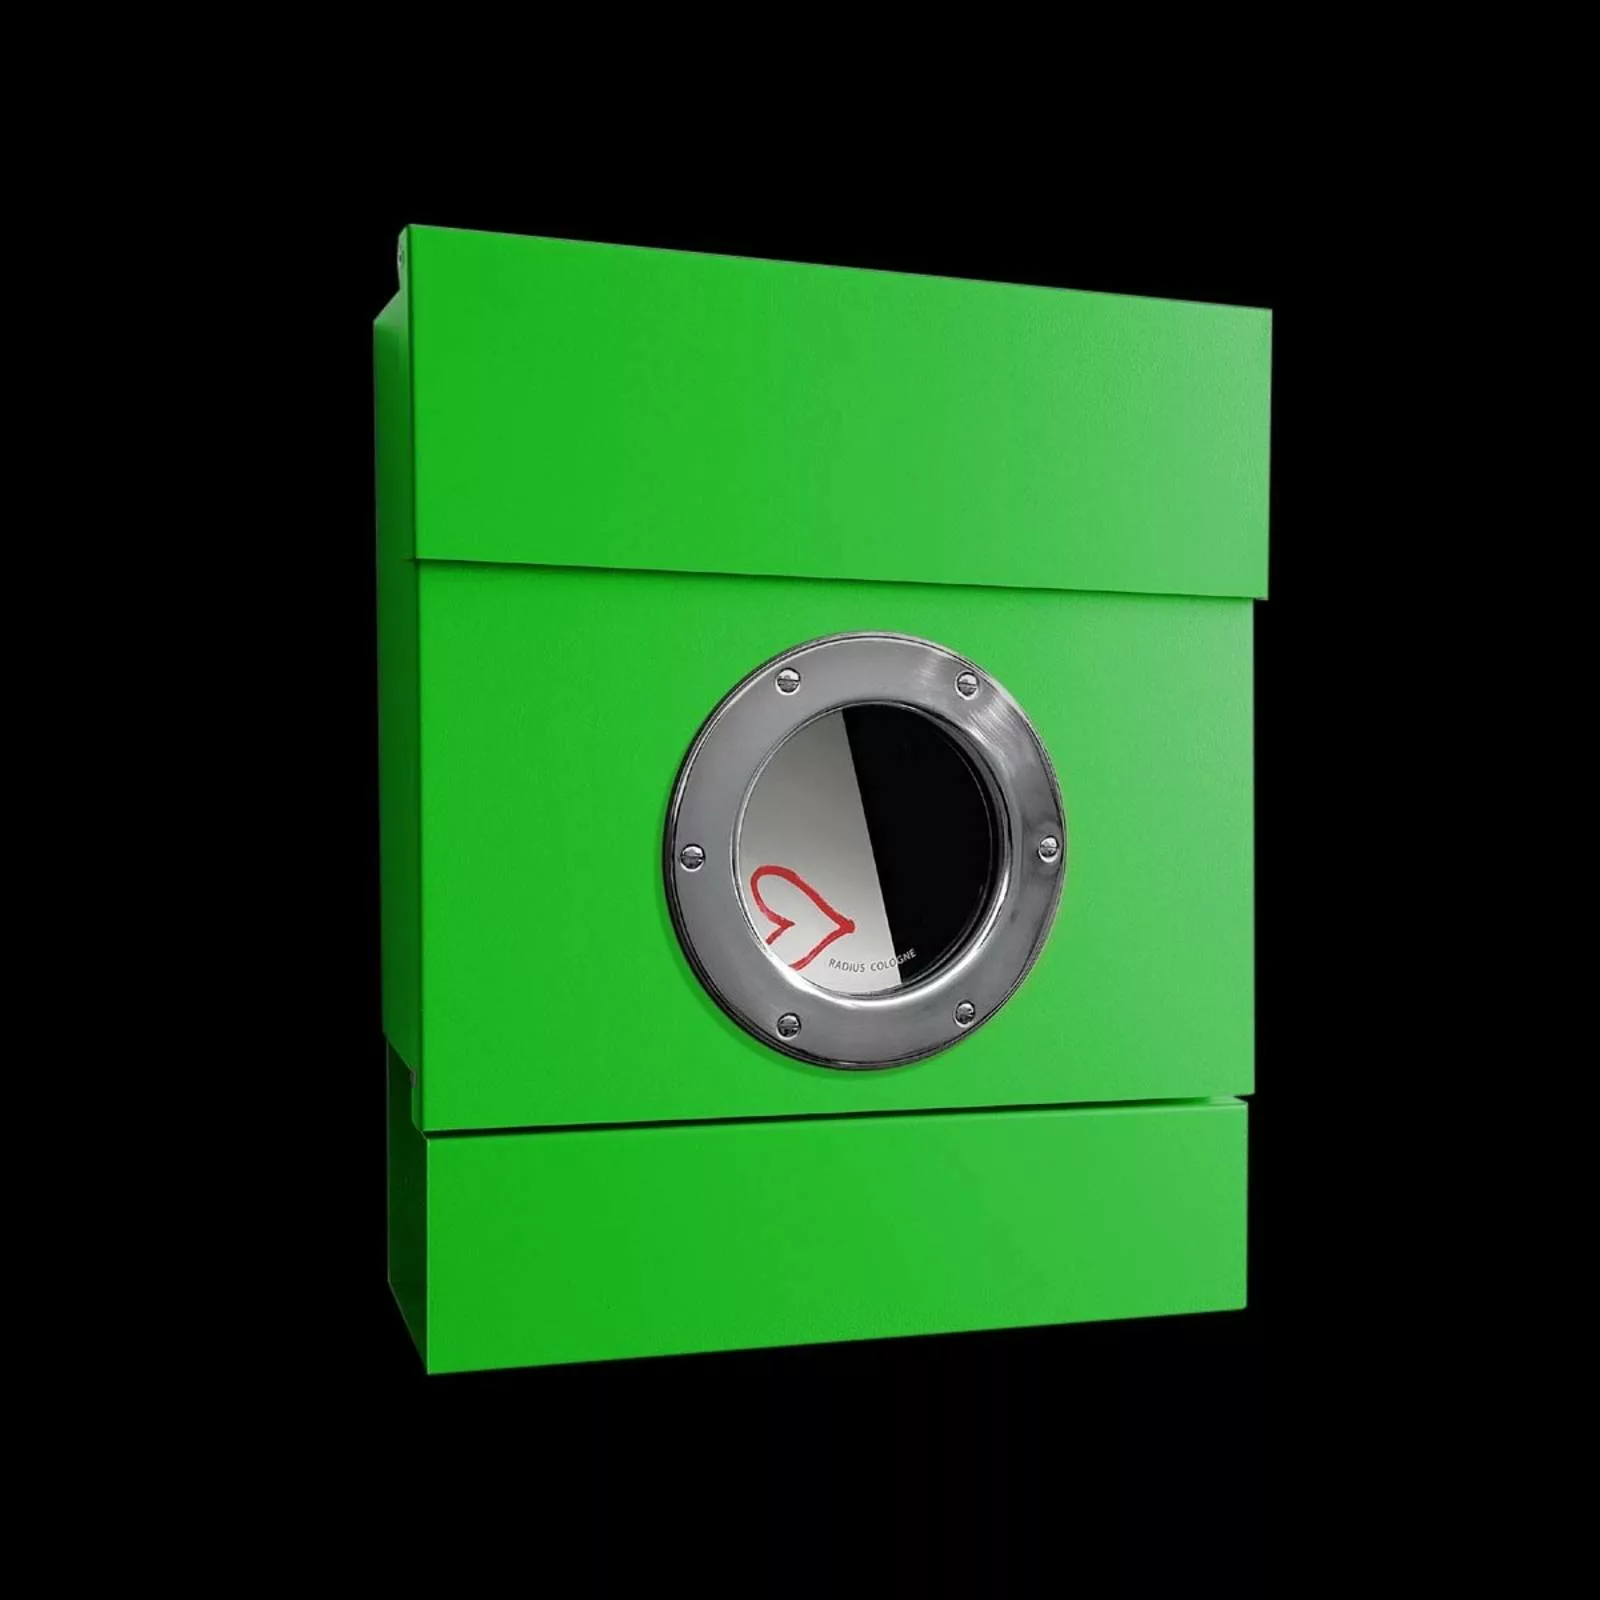 Radius - Letterman II Briefkasten - grün/BxHxT 40x47,5x11,5cm günstig online kaufen